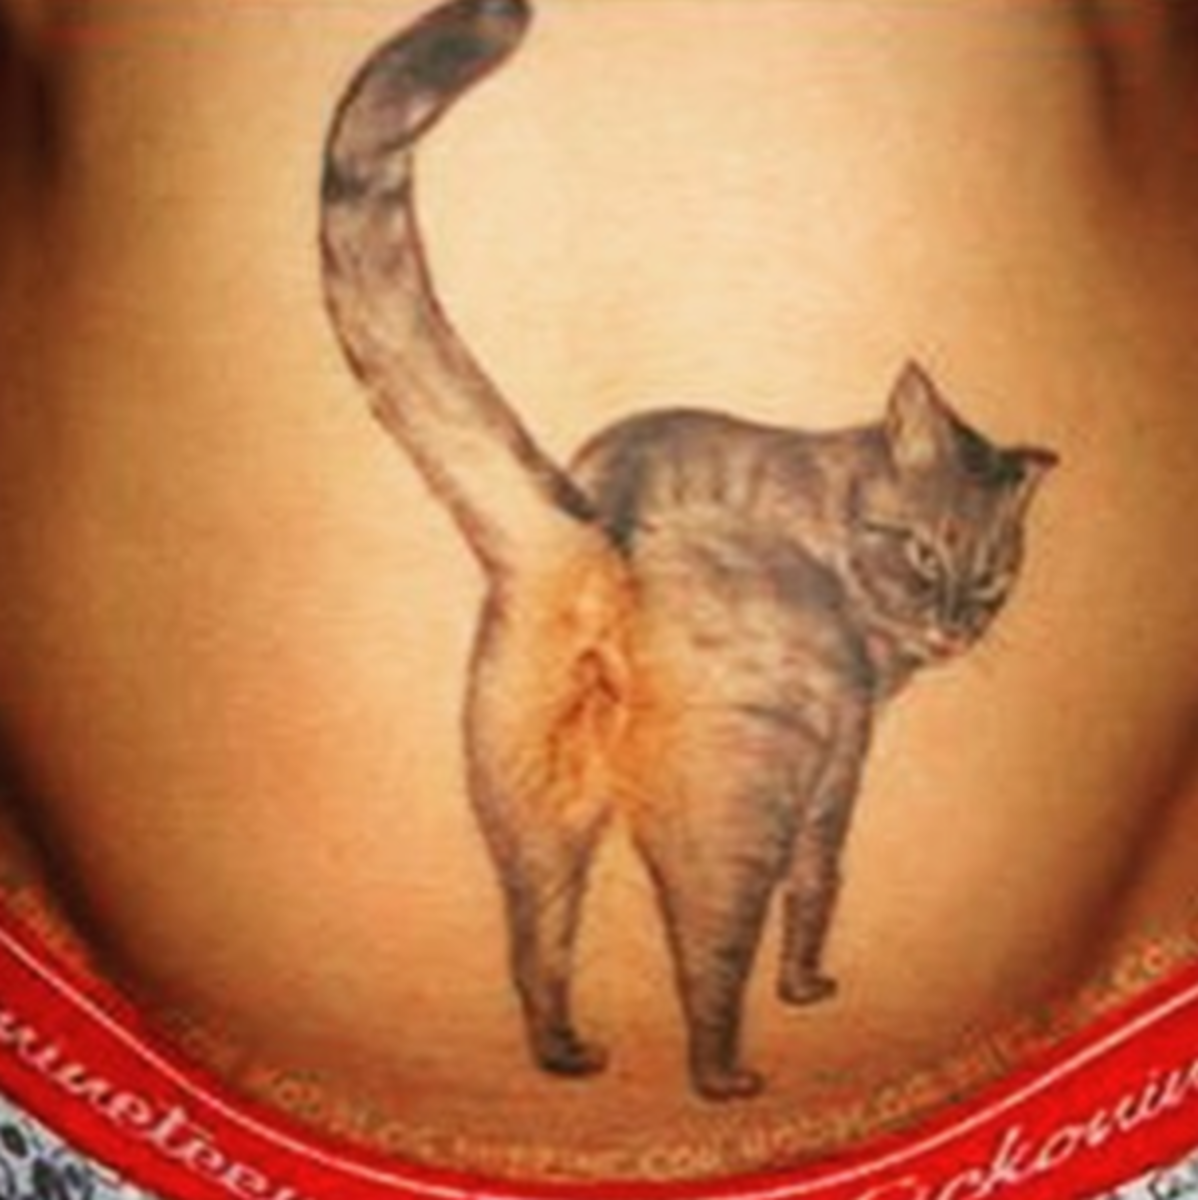 kissa-butt-tatuointi